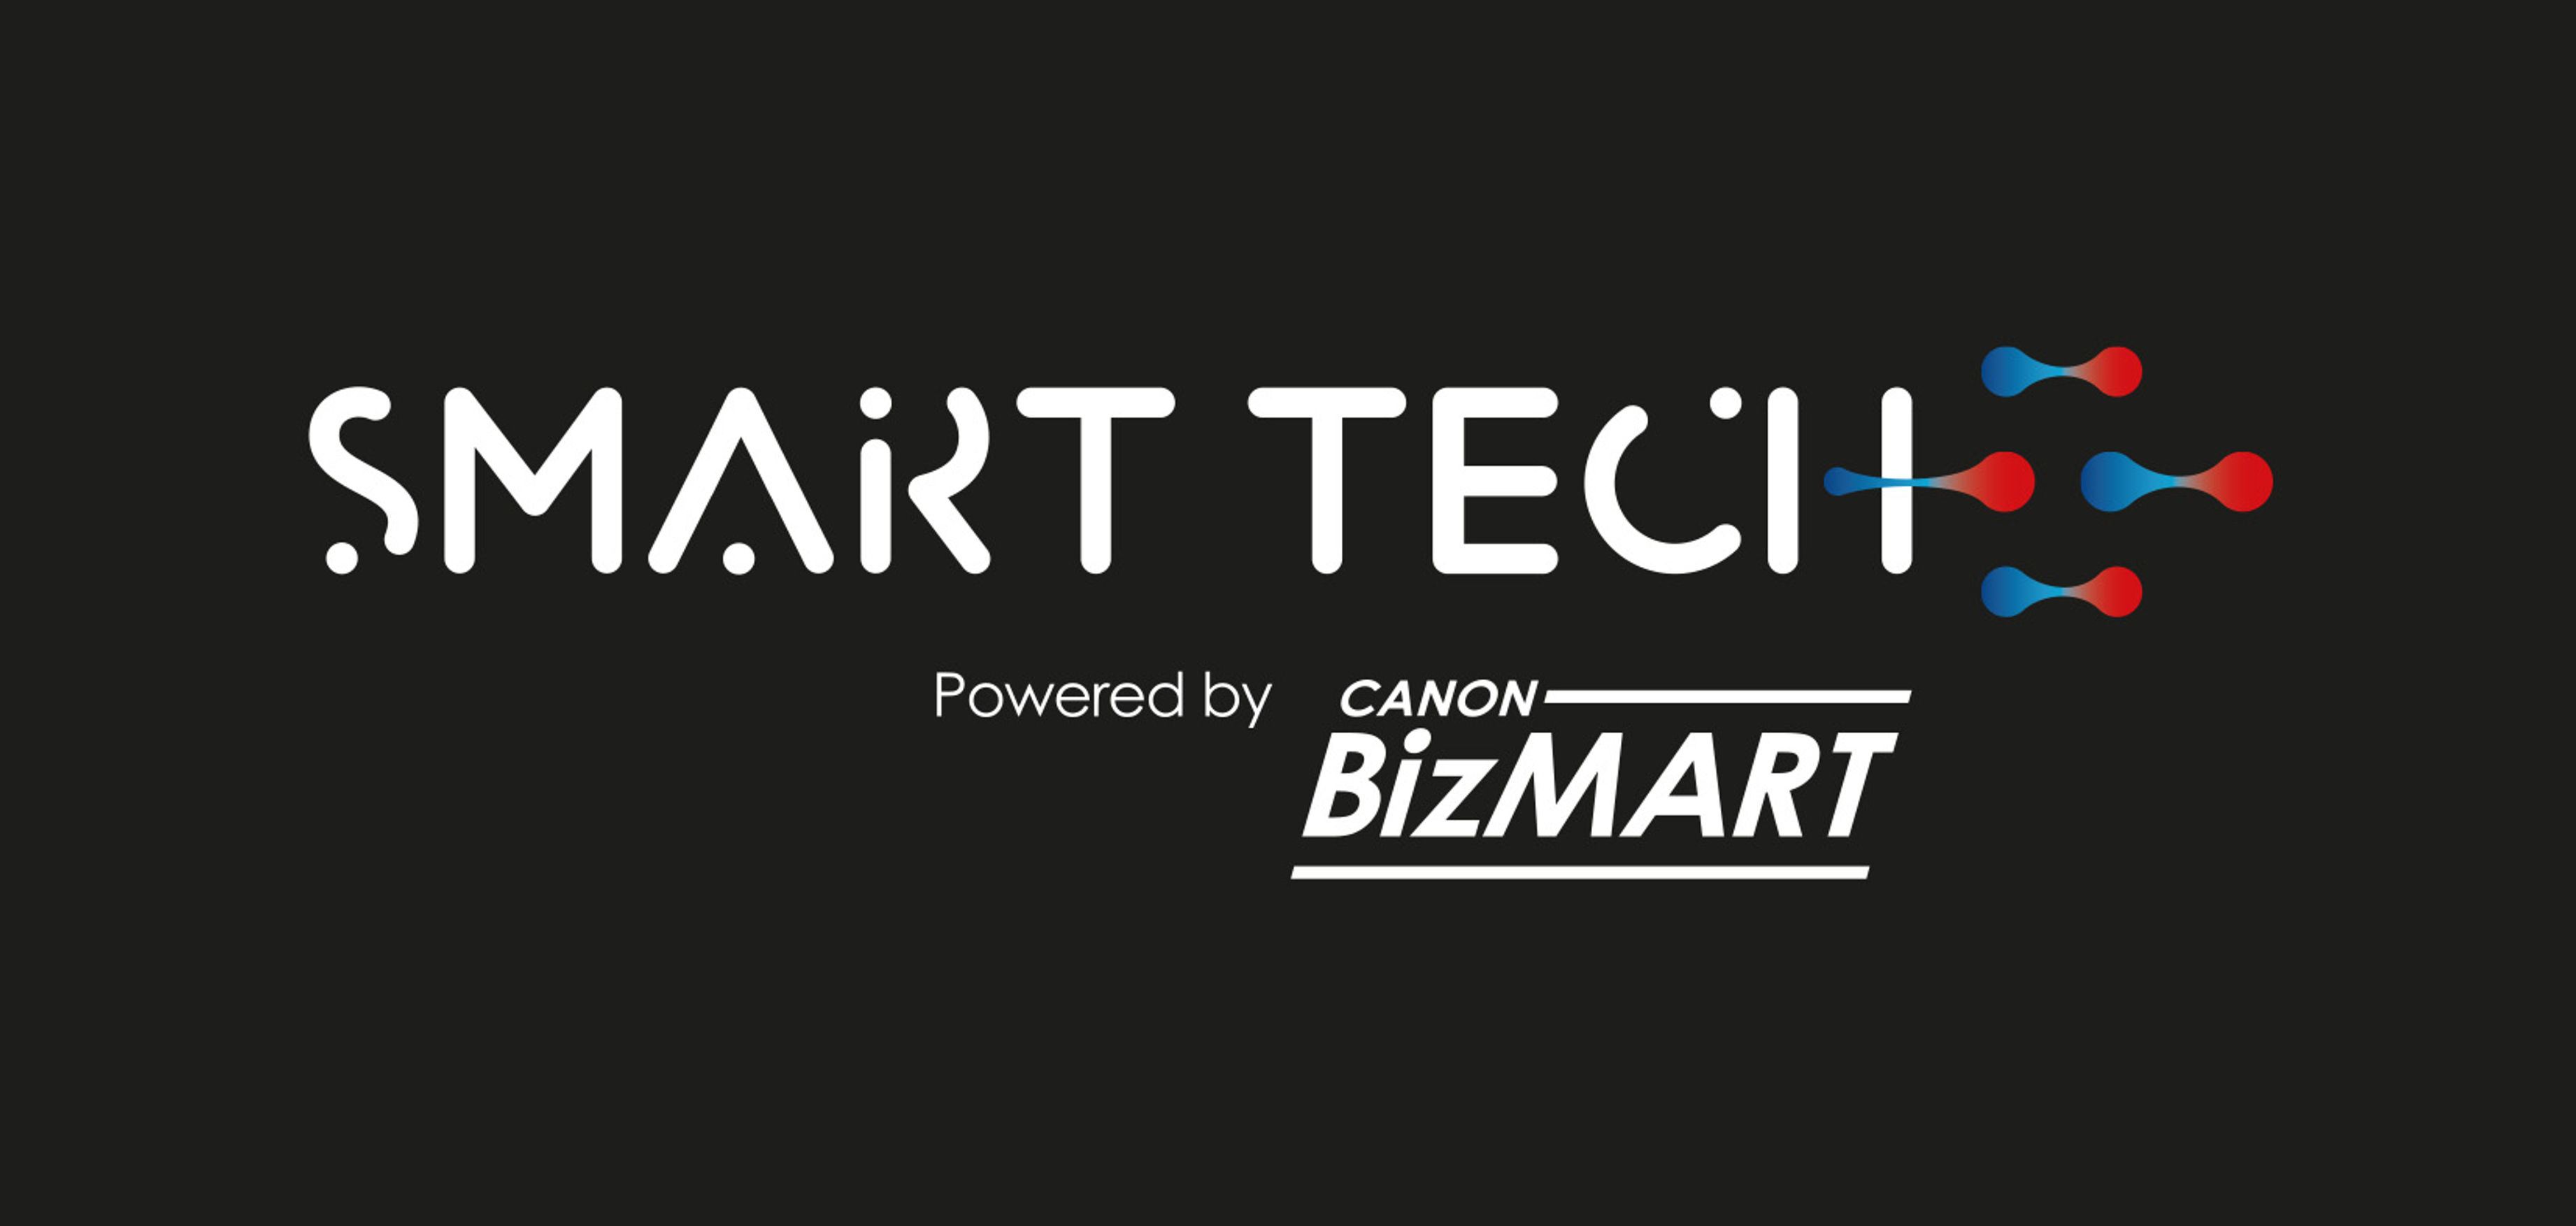 Canon’s Smart Tech Reaches Malaysia